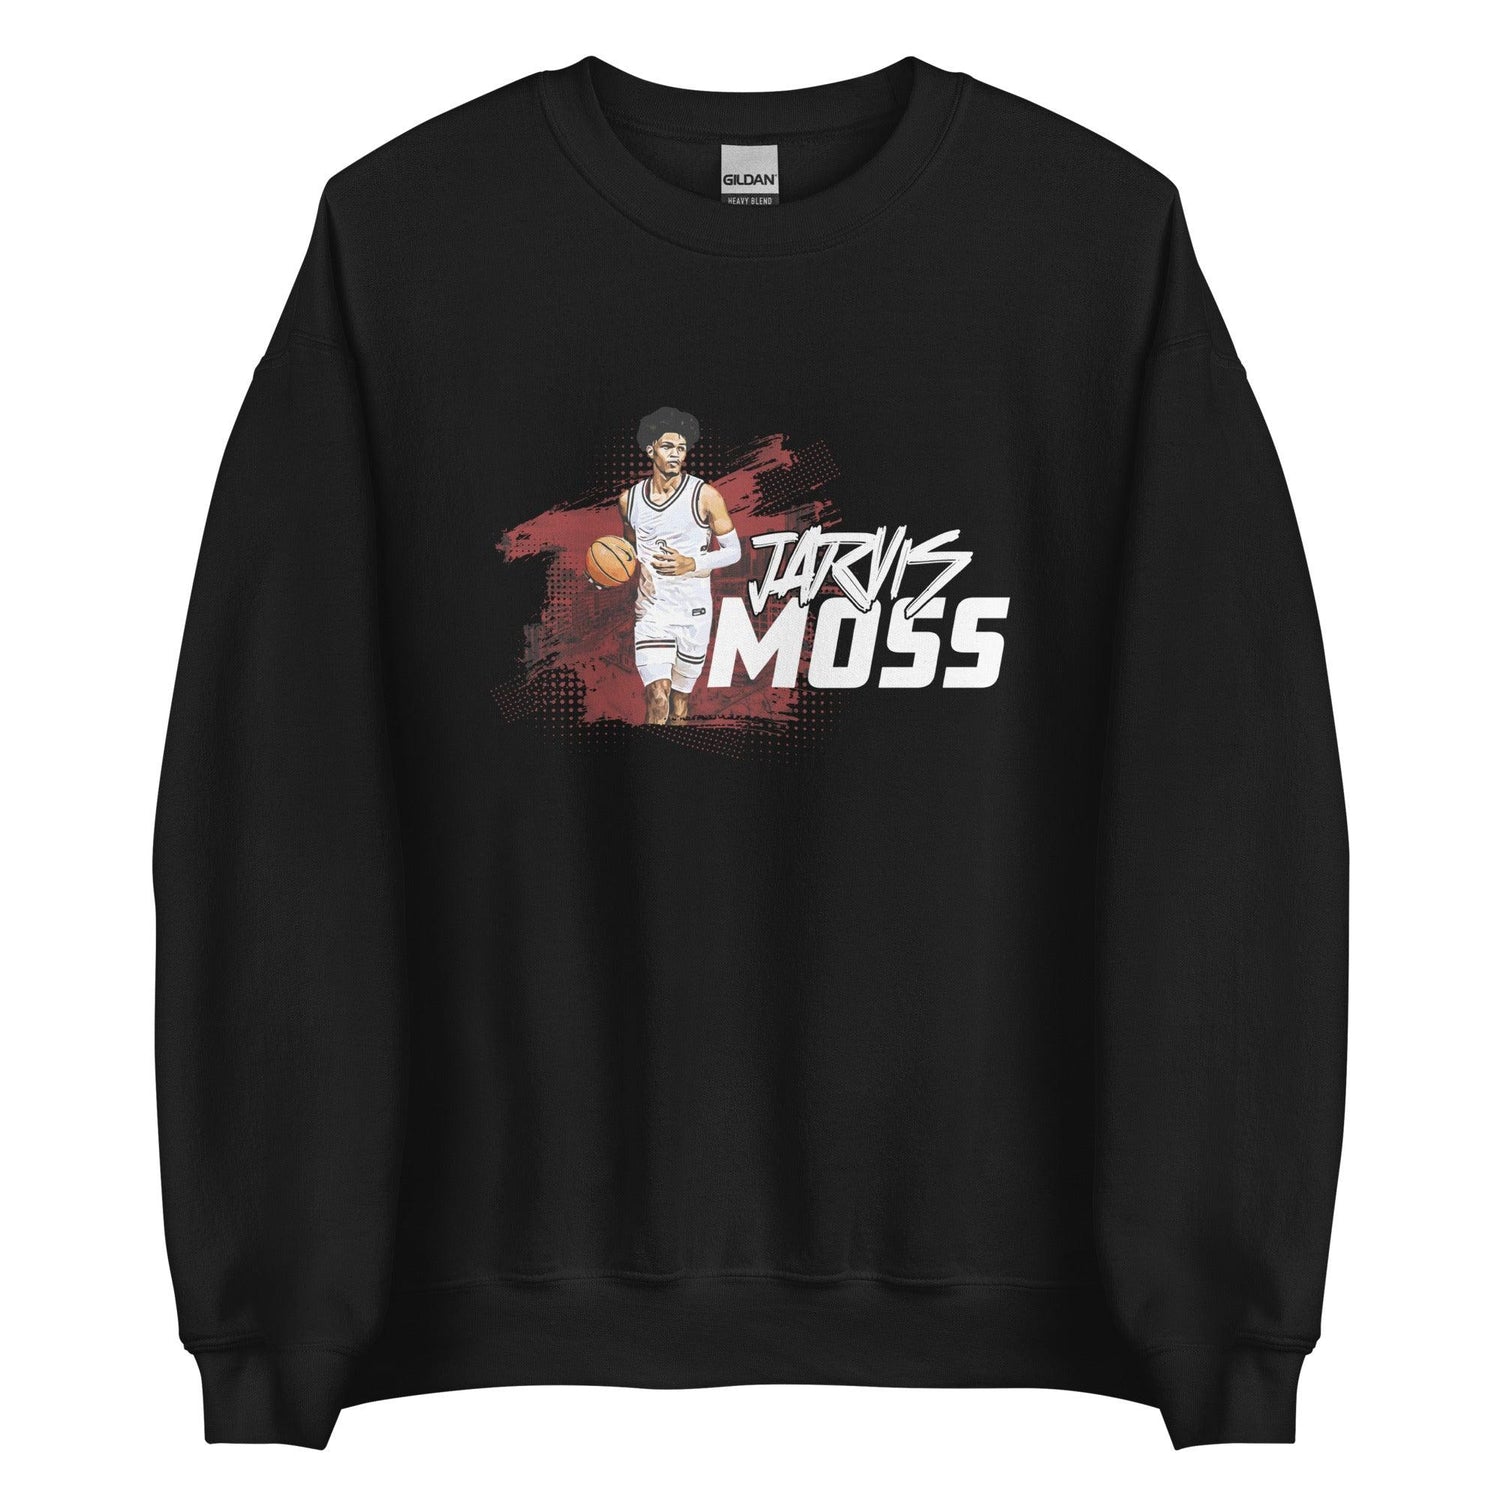 Jarvis Moss "Gameday" Sweatshirt - Fan Arch